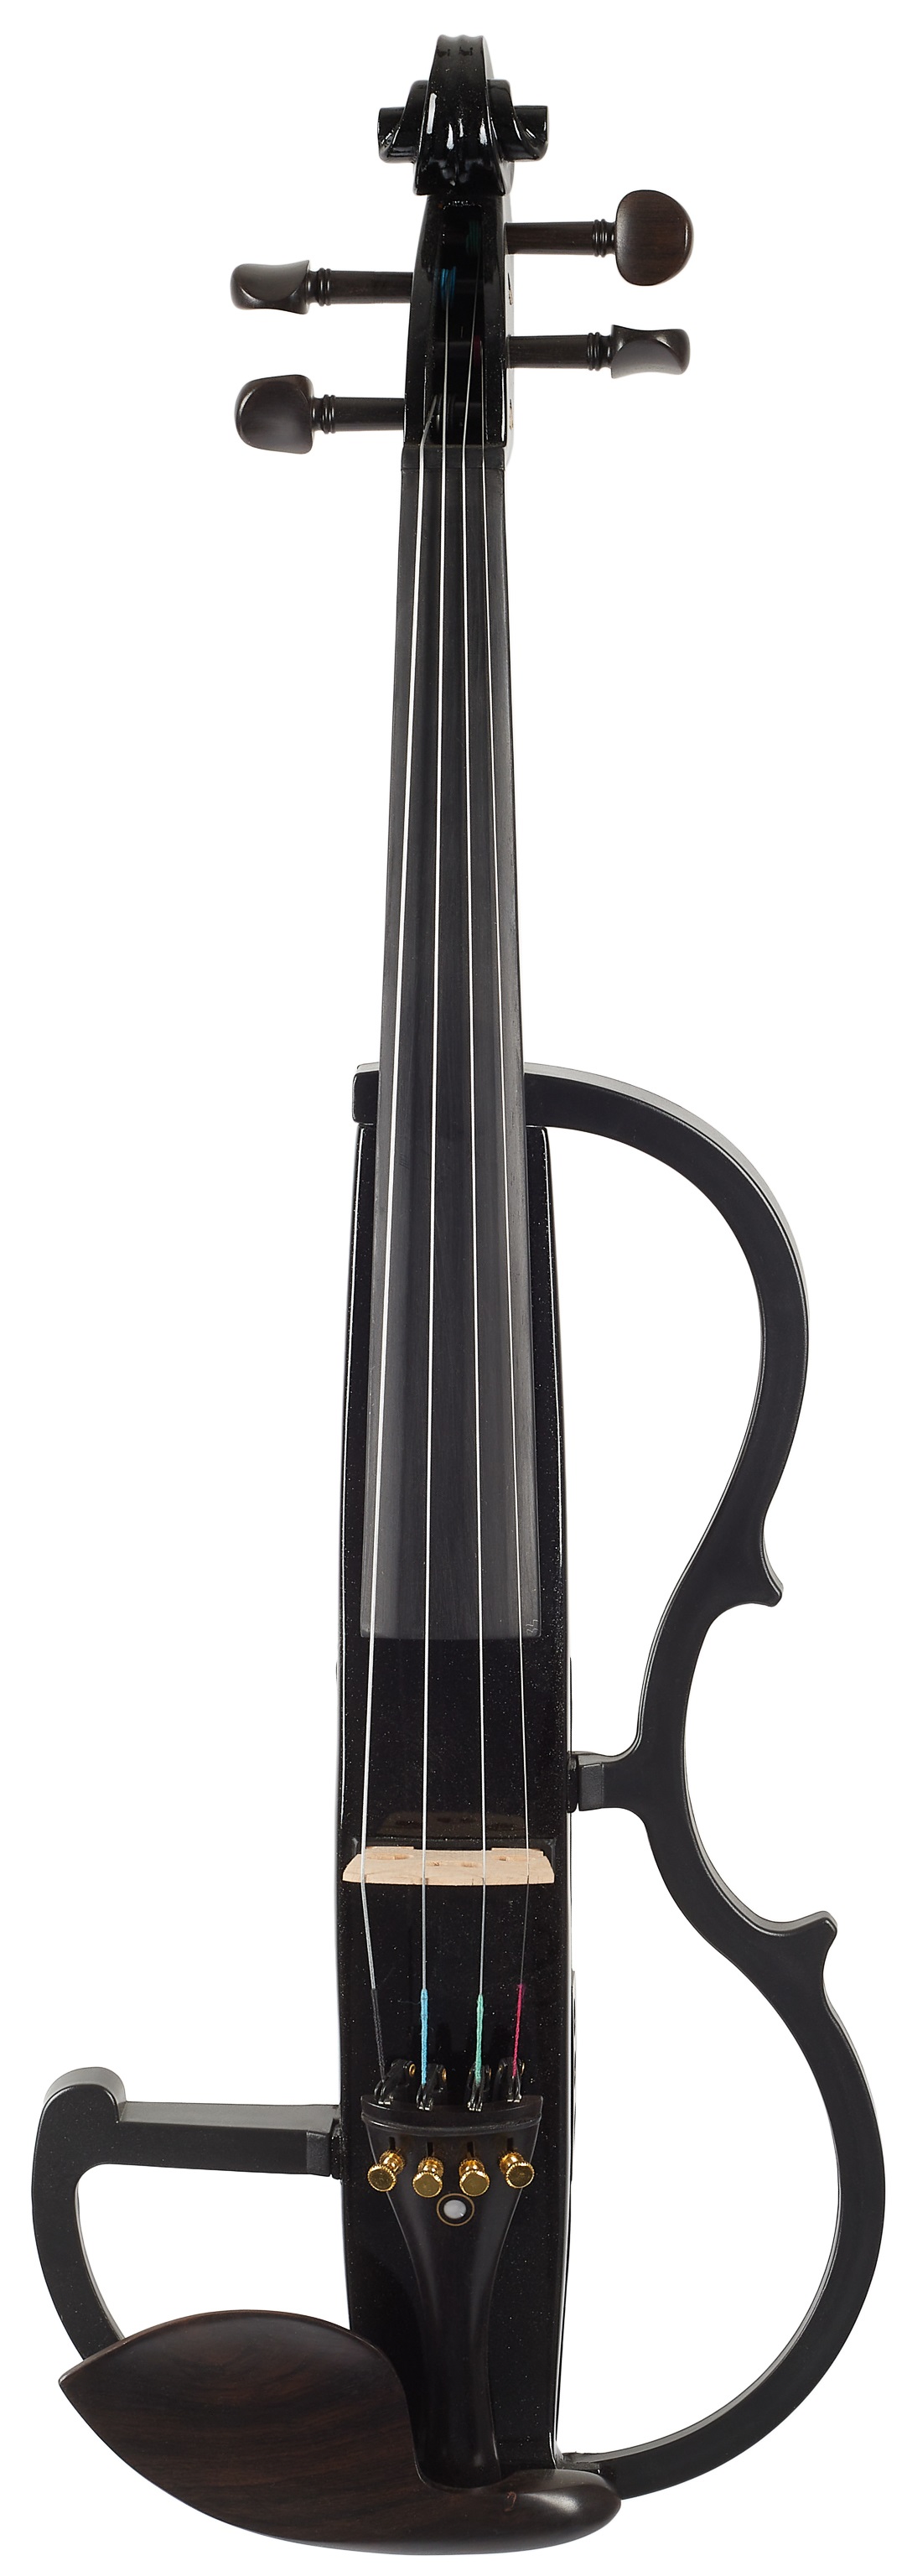 Bacio Instruments Electric Violin BK